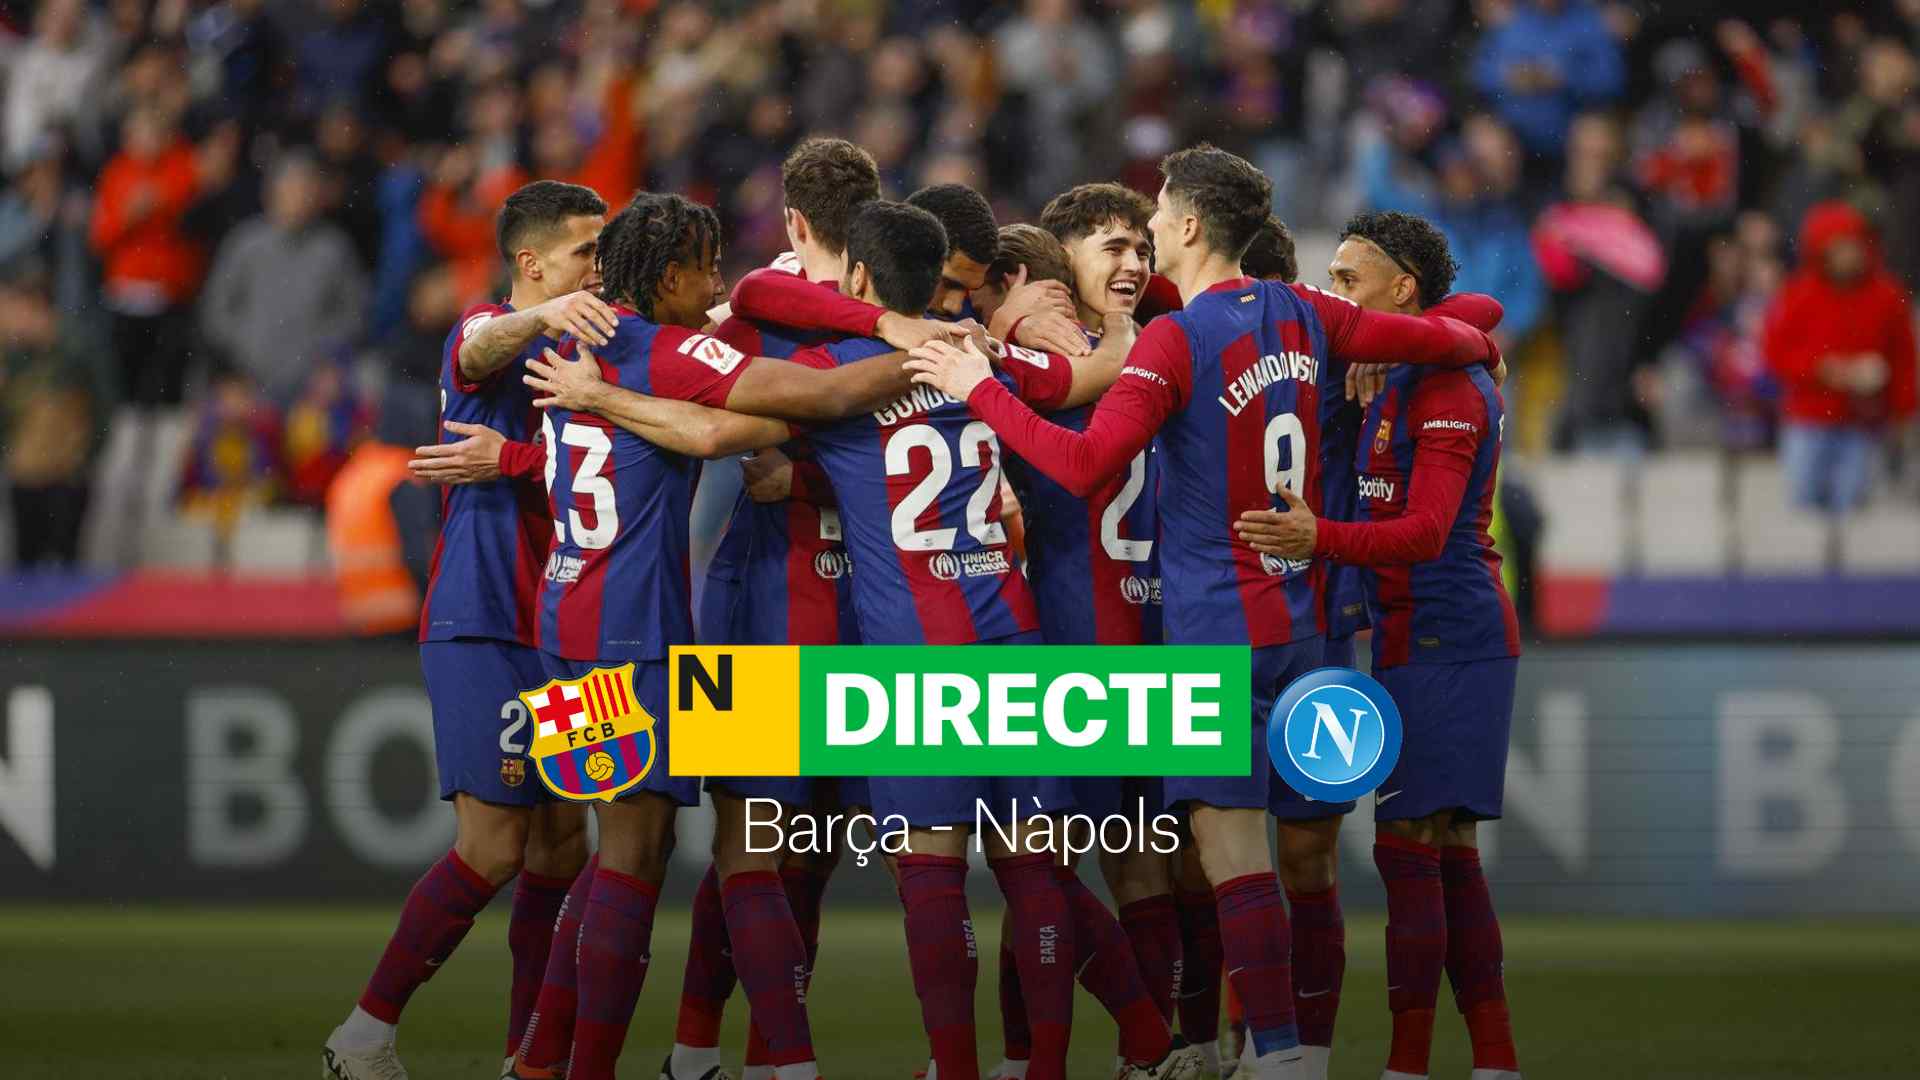 Barça - Nàpols de la Champions League, DIRECTO | Resultado, resumen y goles